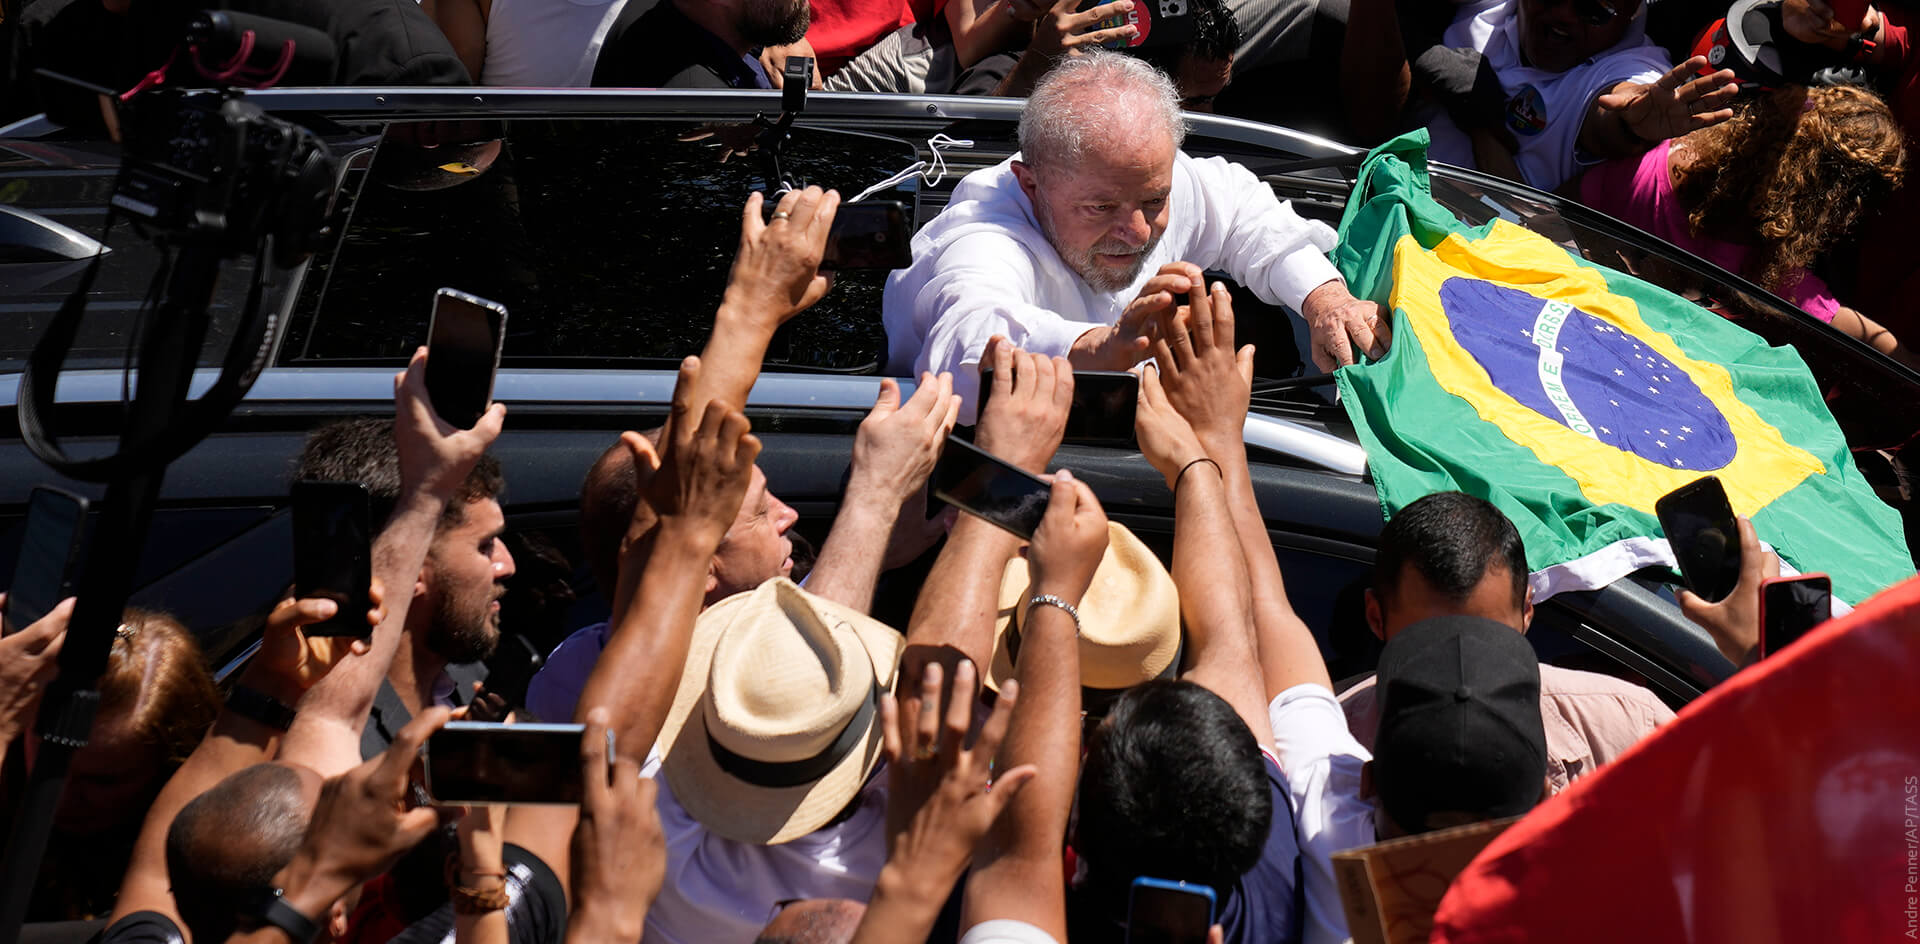 Бразилия: несмотря на победу Лулы, противостояние продолжается